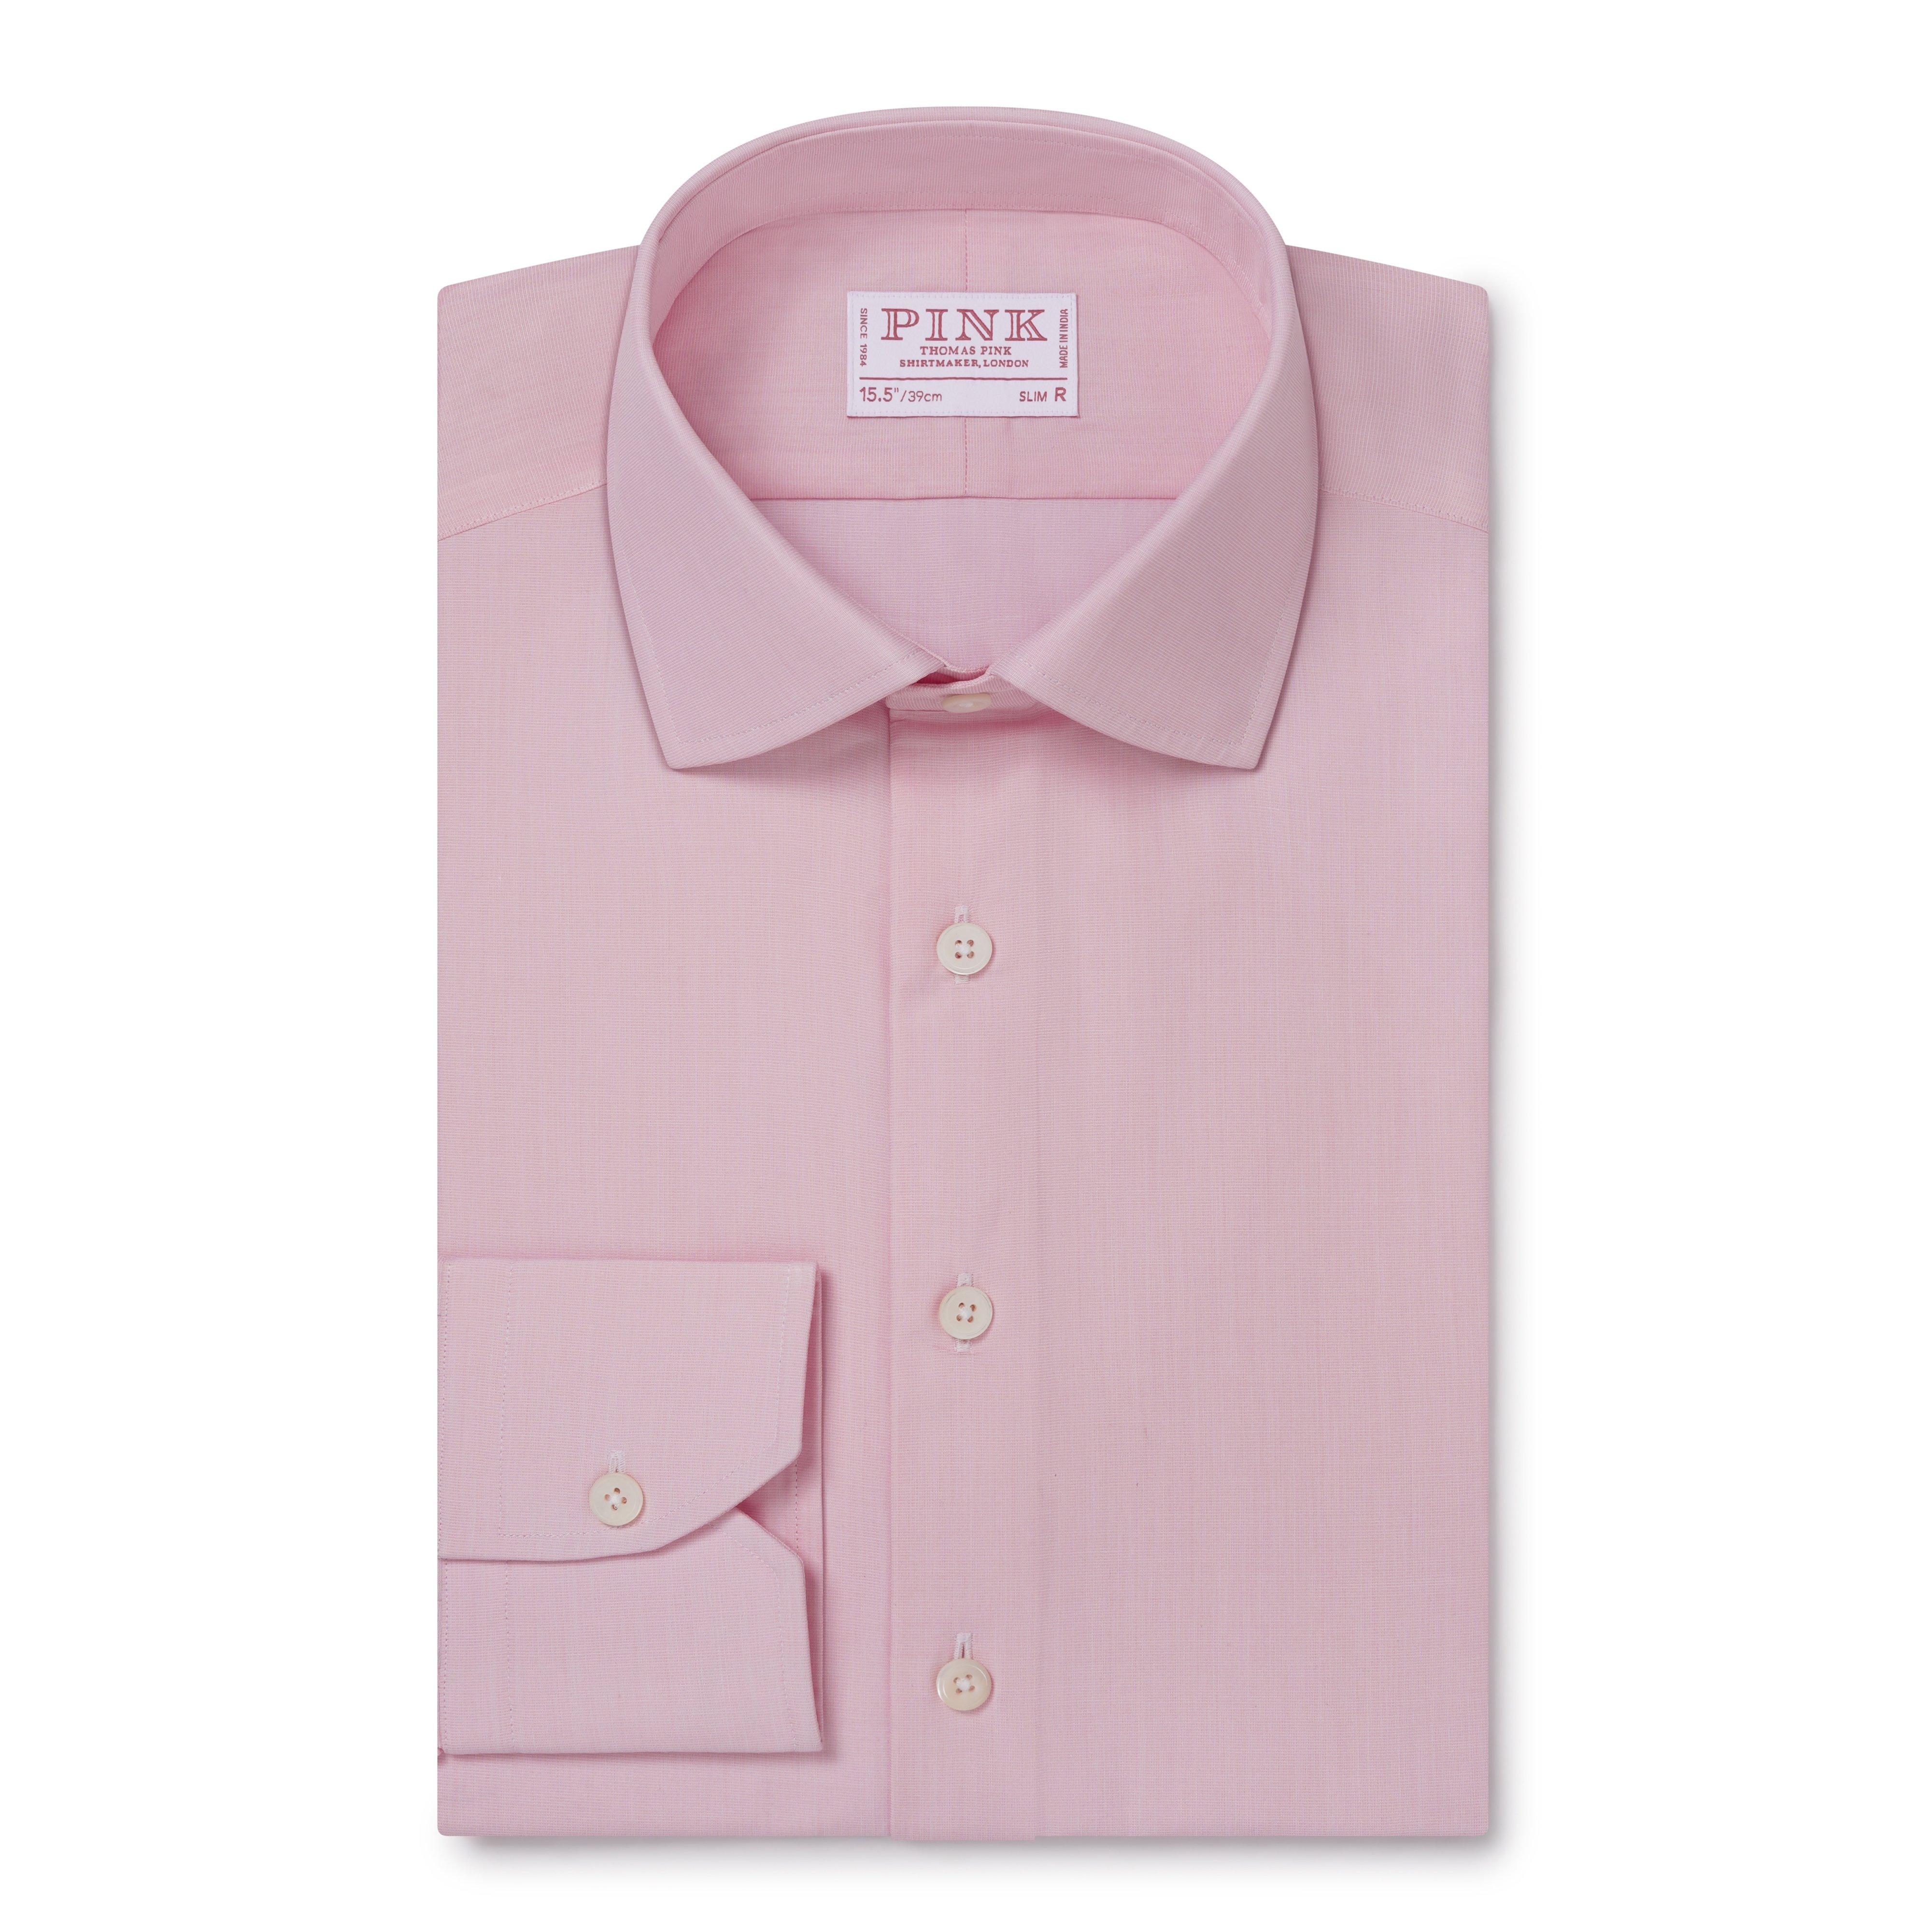 Thomas Pink, Shirts, Thomas Pink Cotton Dress Shirt Men Pink With Stripes